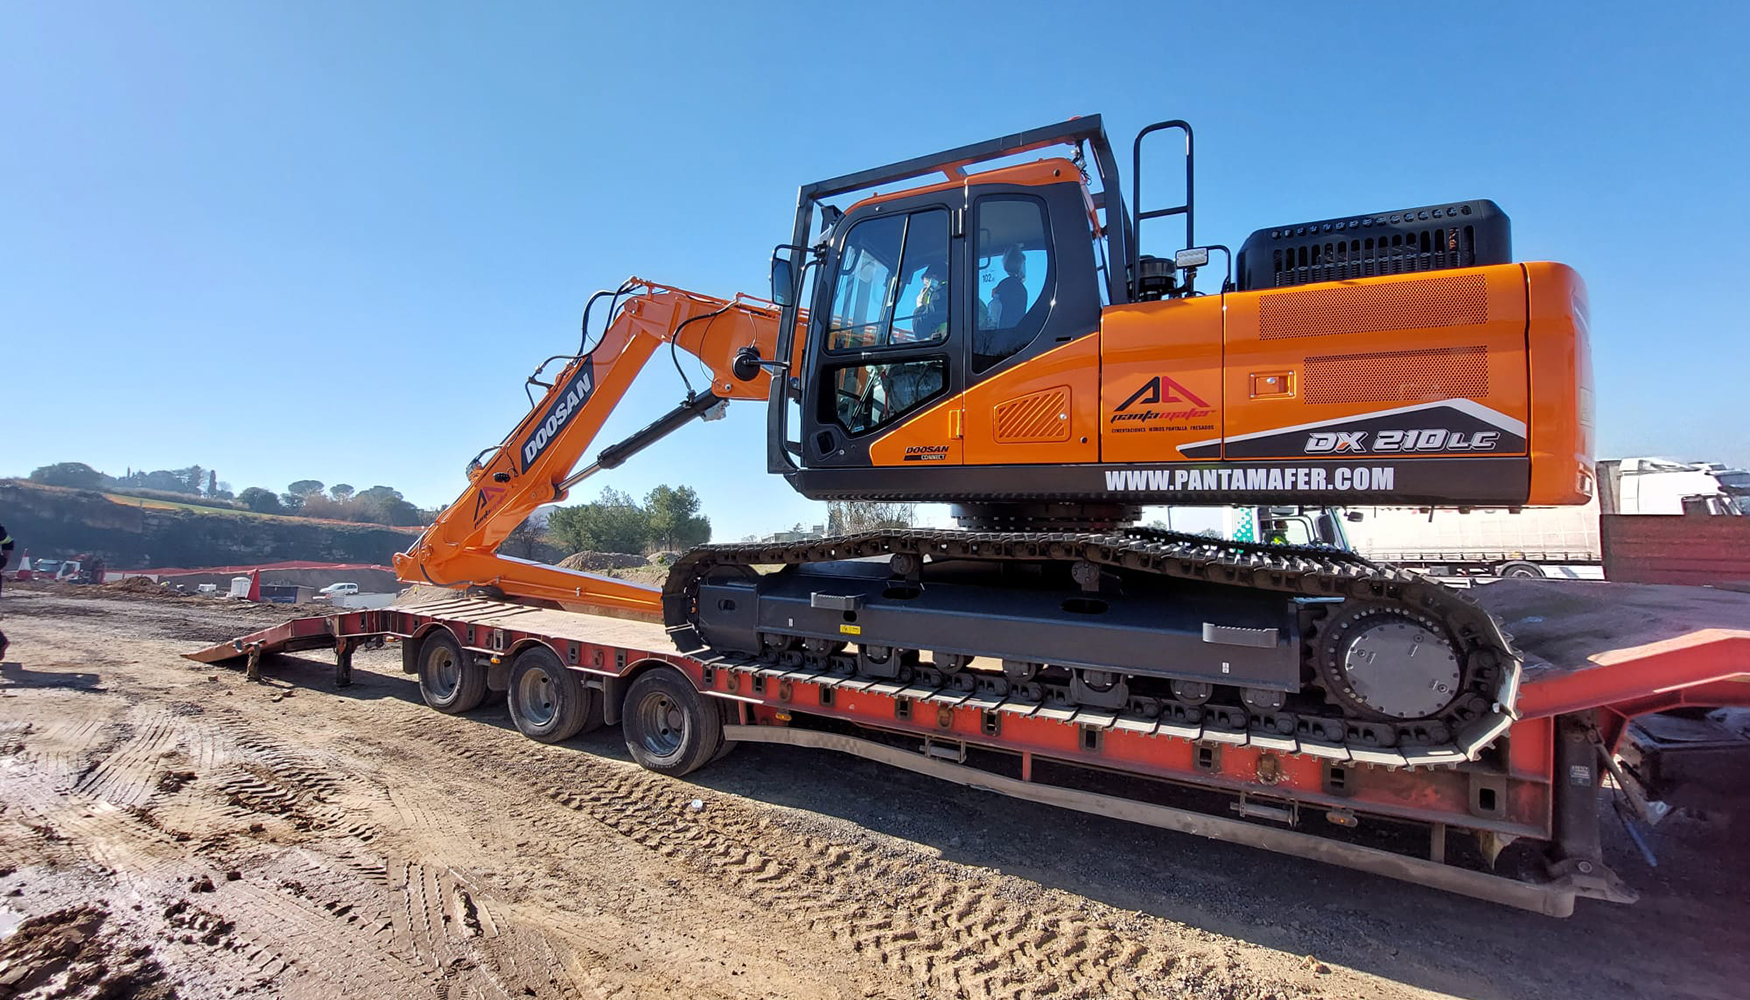 La excavadora de cadenas Doosan DX210LC facilita el transporte por carretera